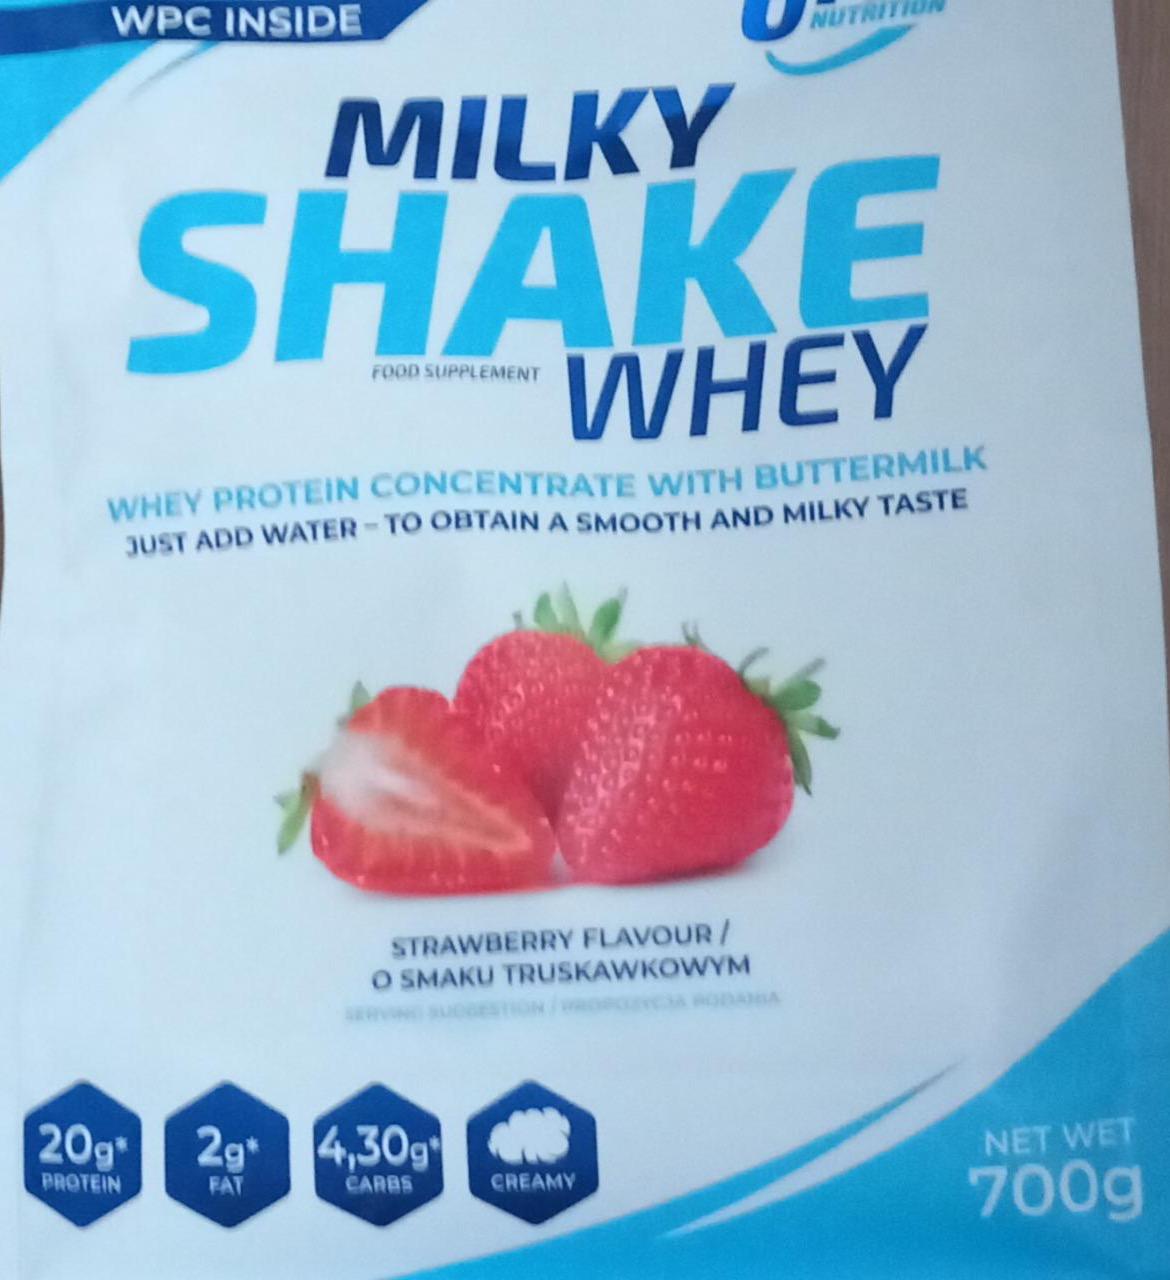 Zdjęcia - Milky shake whey strawberry 6PAK Nutrition